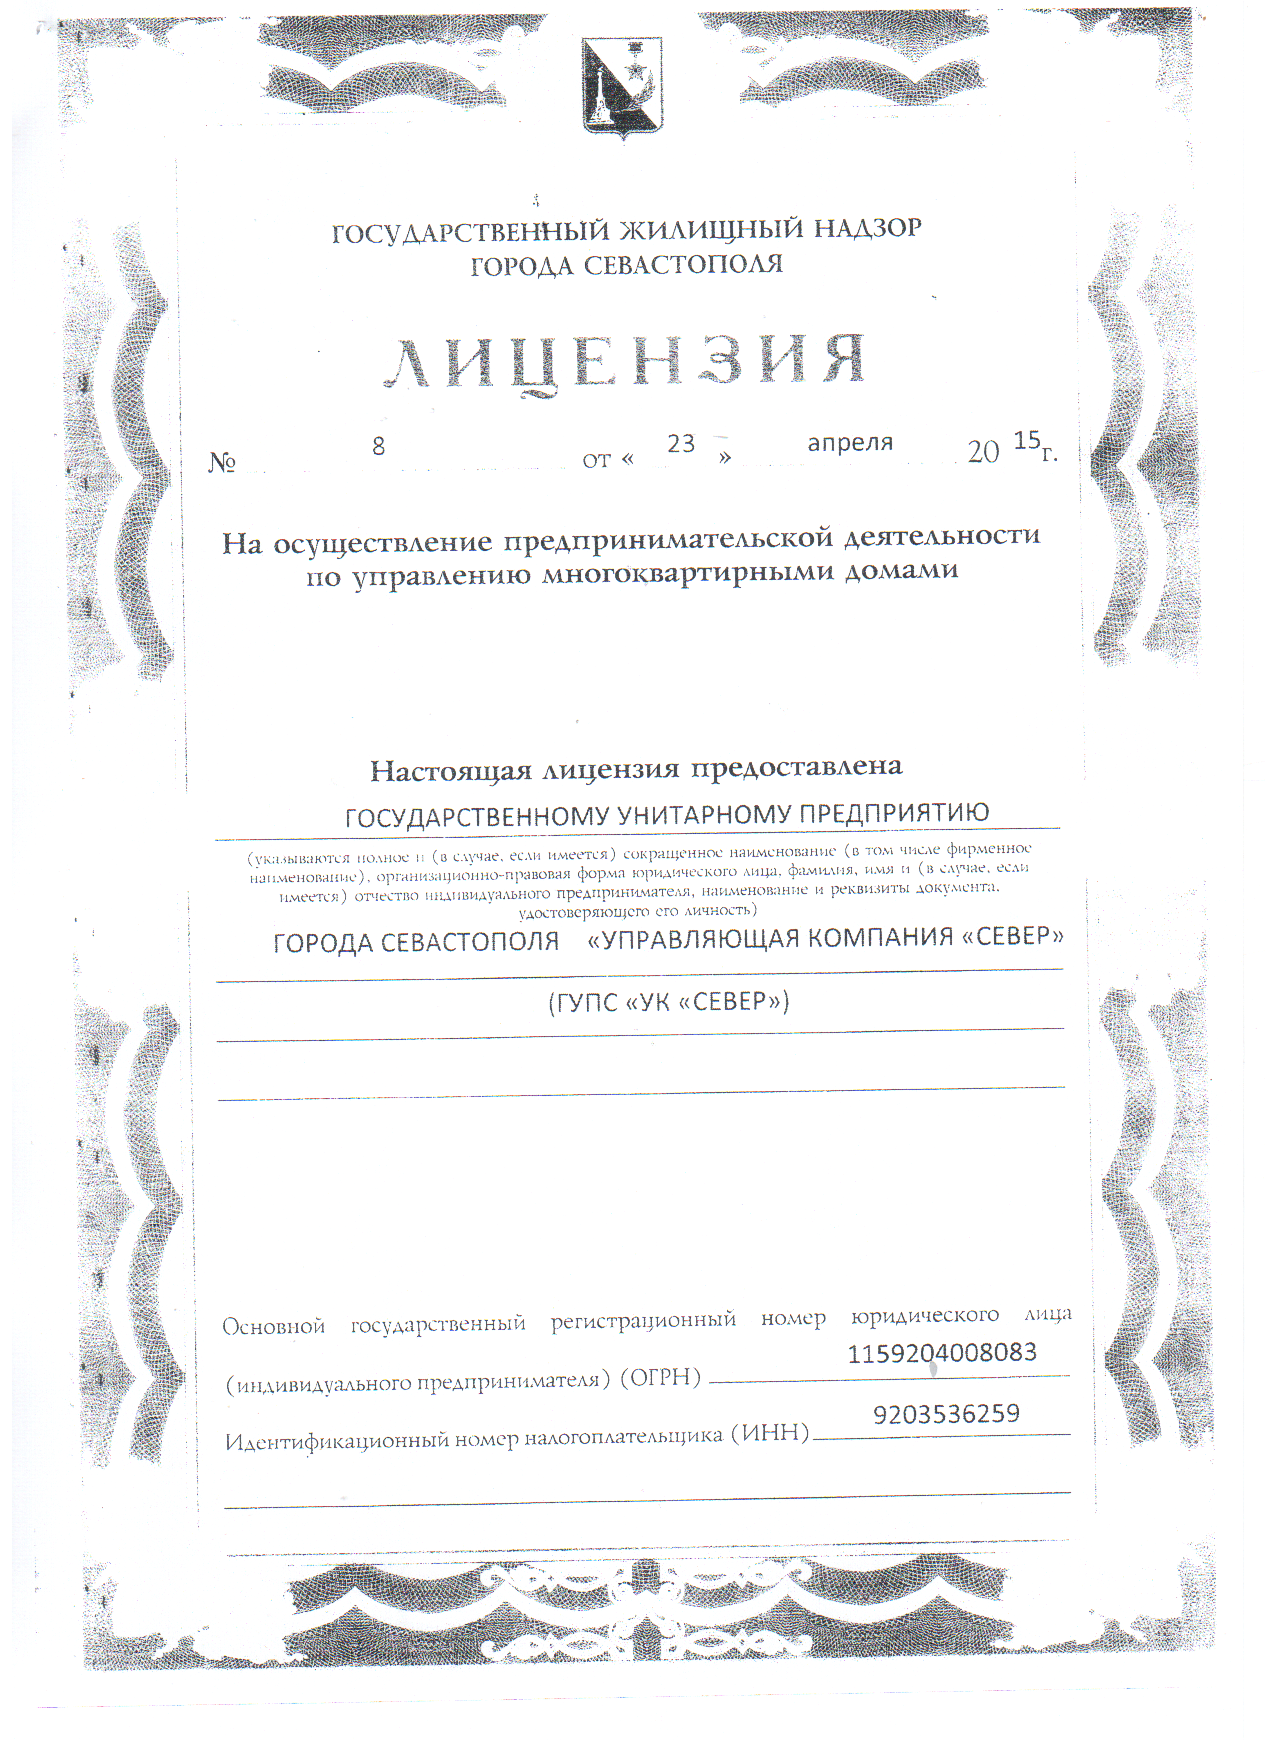 Лицензия №8 от 23.04.2015 г.